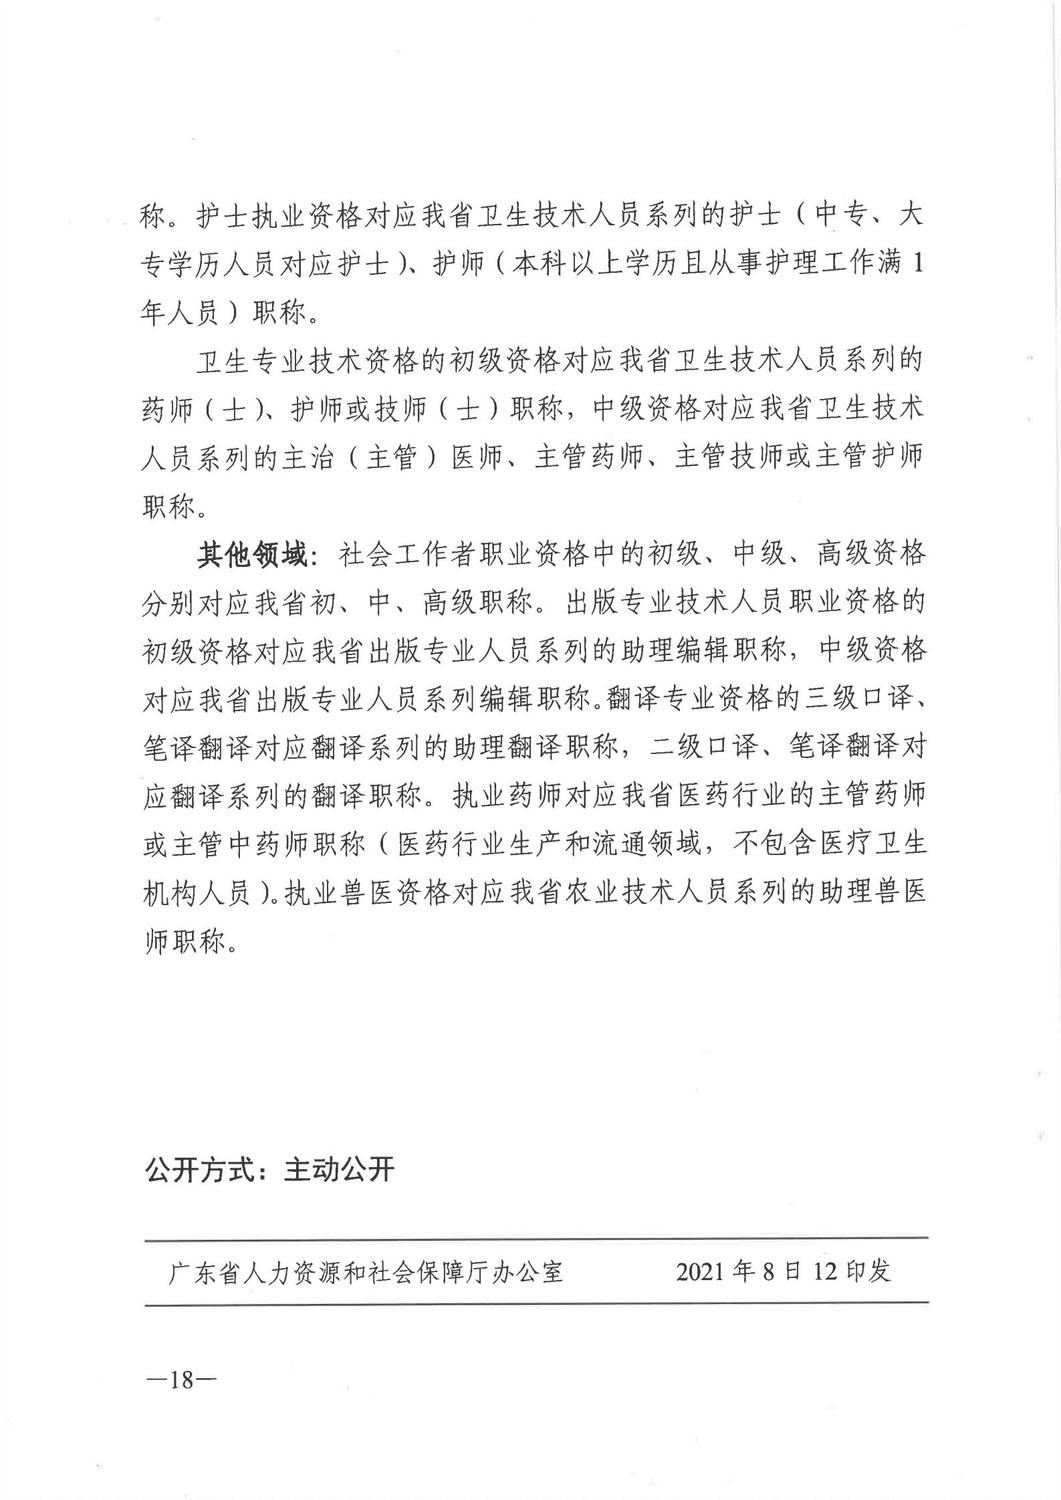 广东省人力资源和社会保障厅《关于做好2021年度职称评审工作的通知》_17.jpg